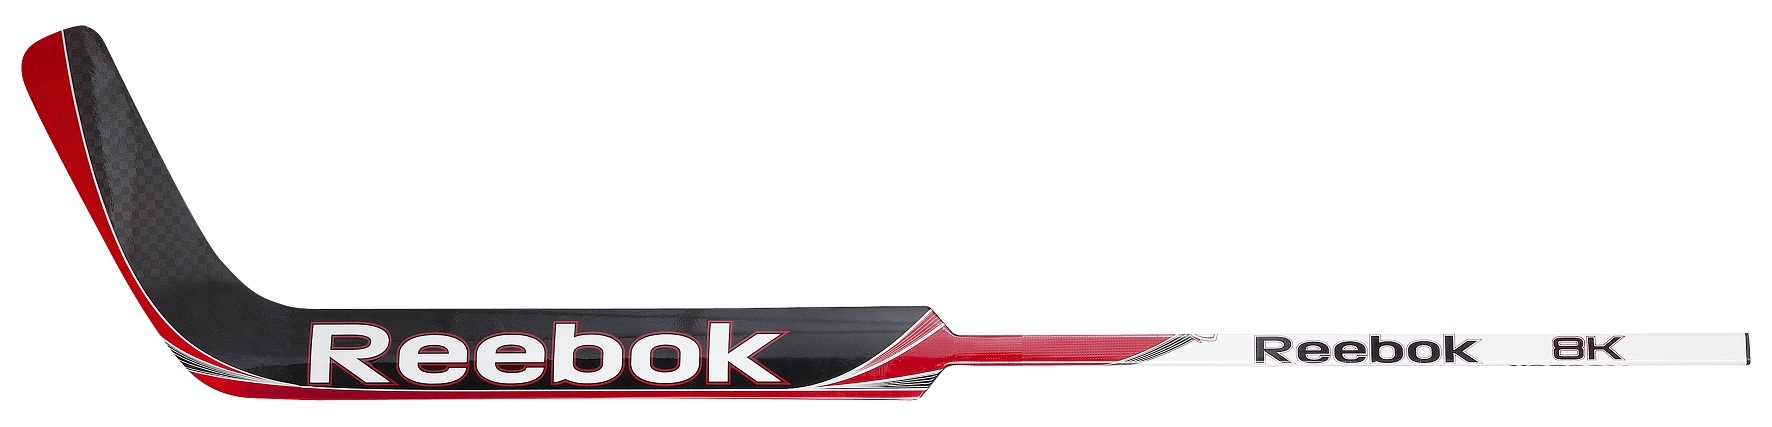 RBK 8K Composite Senior Goalie stick